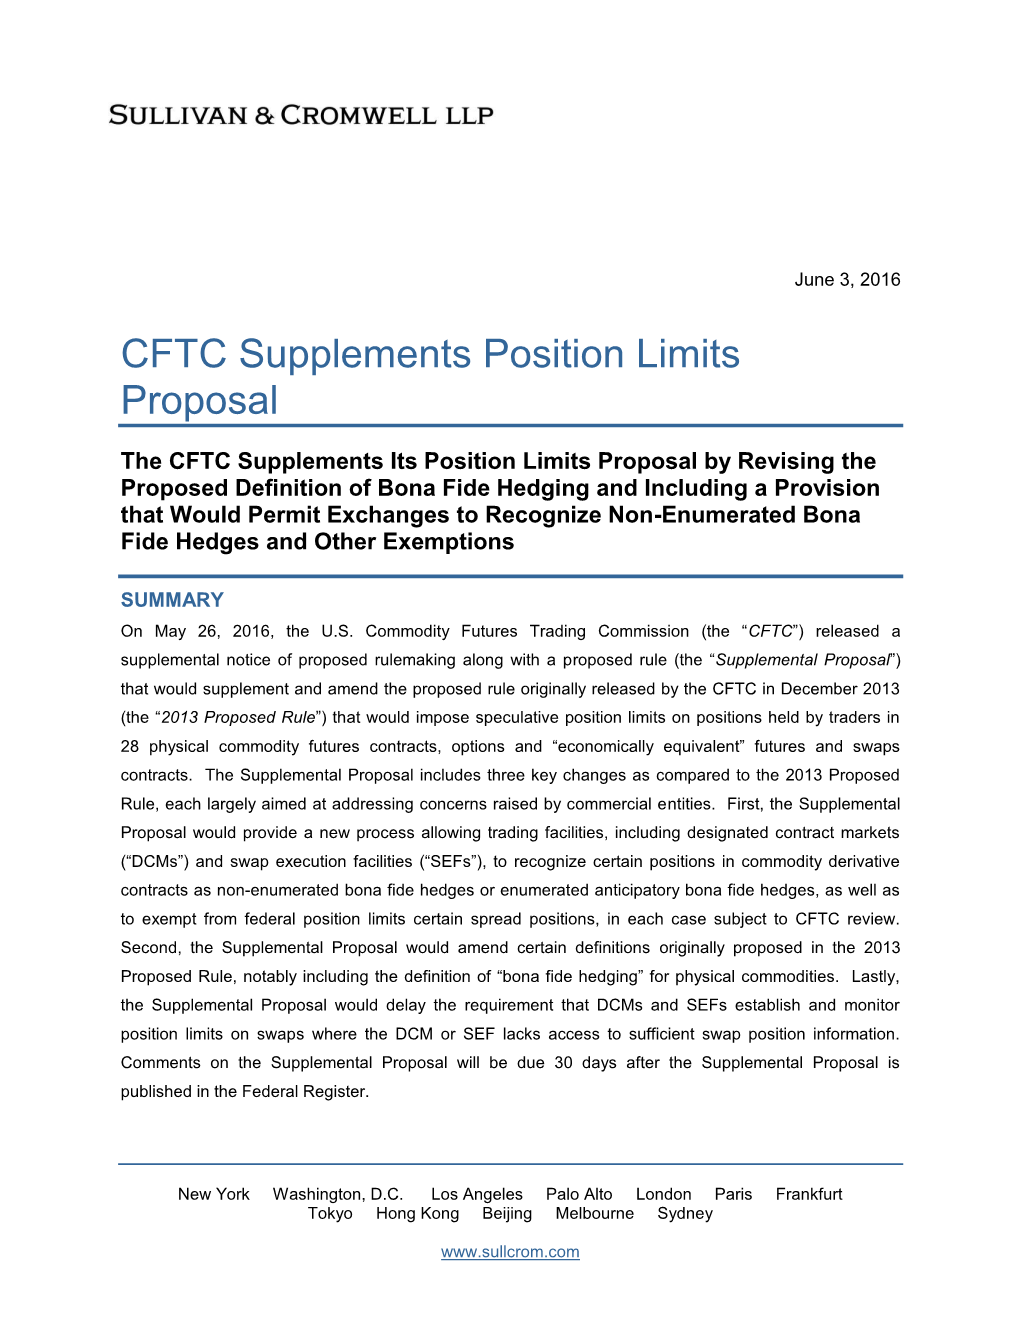 CFTC Supplements Position Limits Proposal